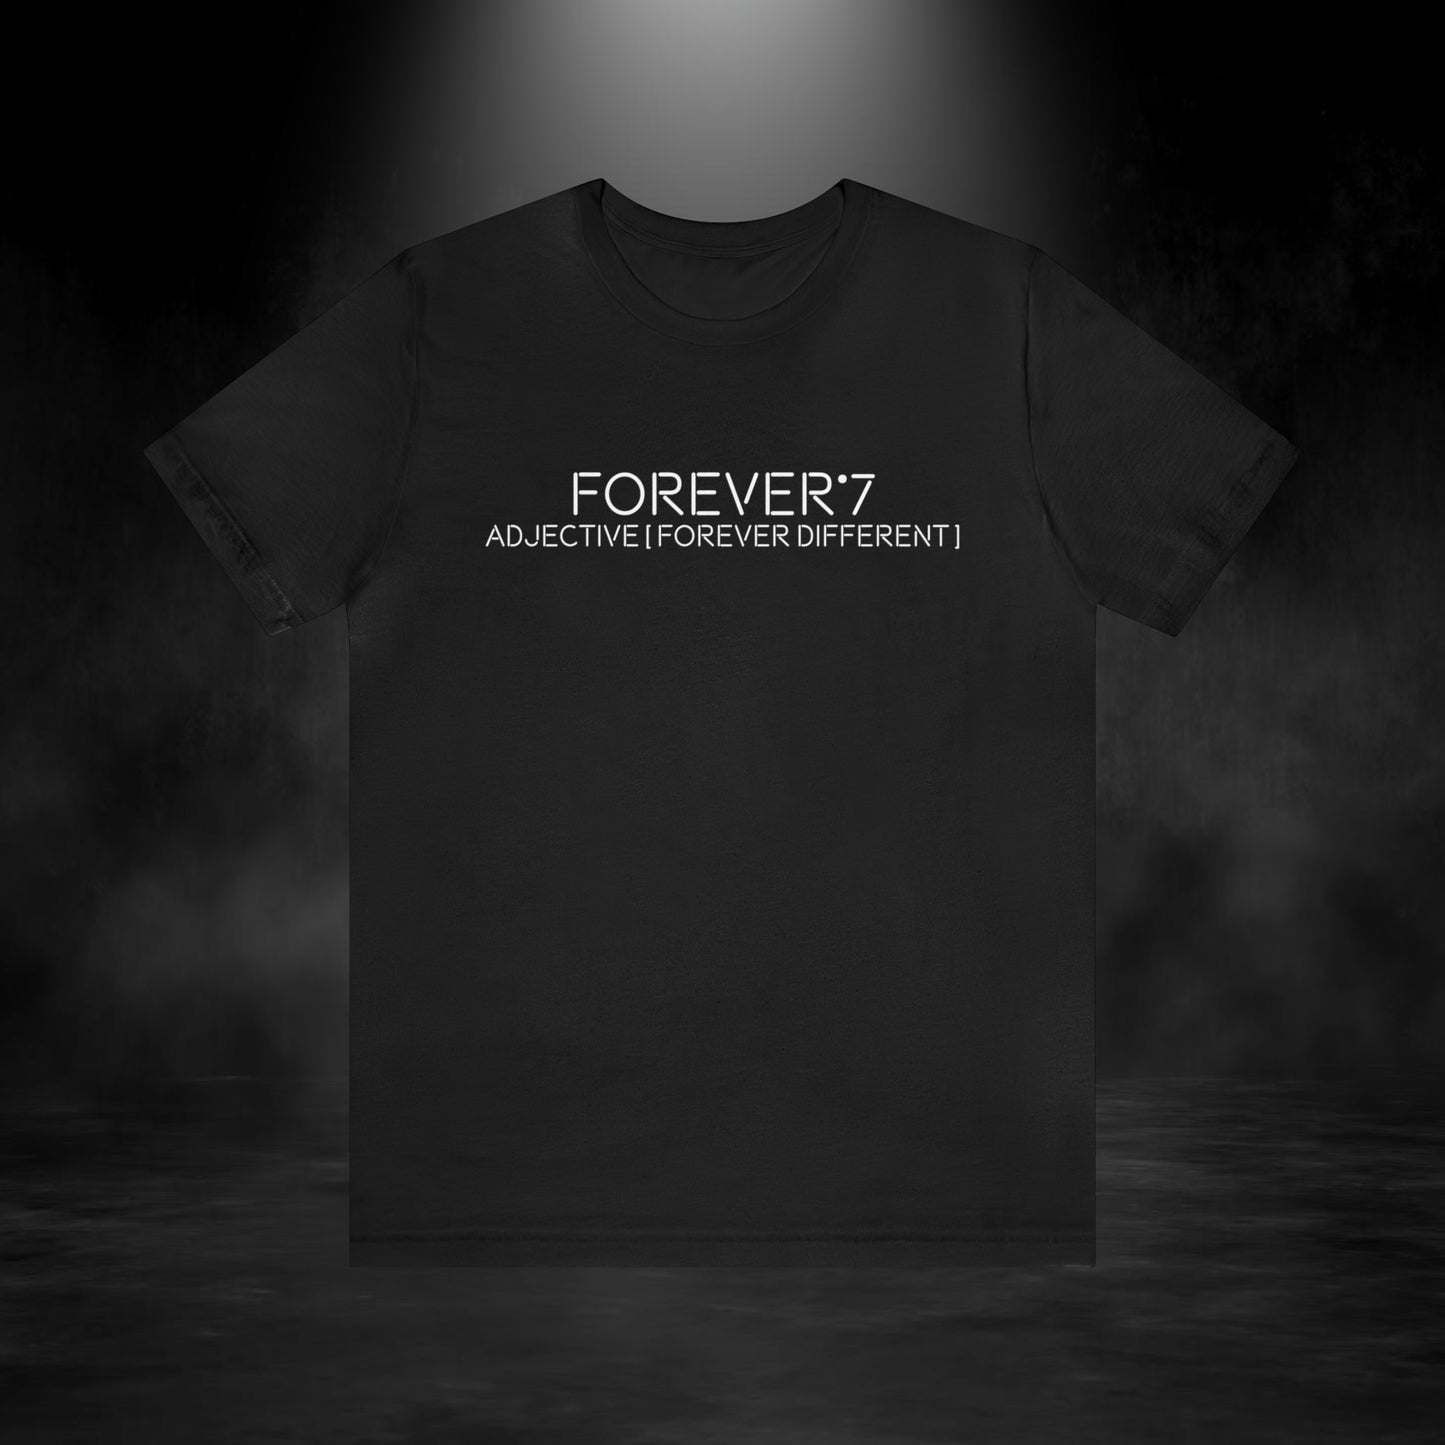 Forever 7 Tee Shirt